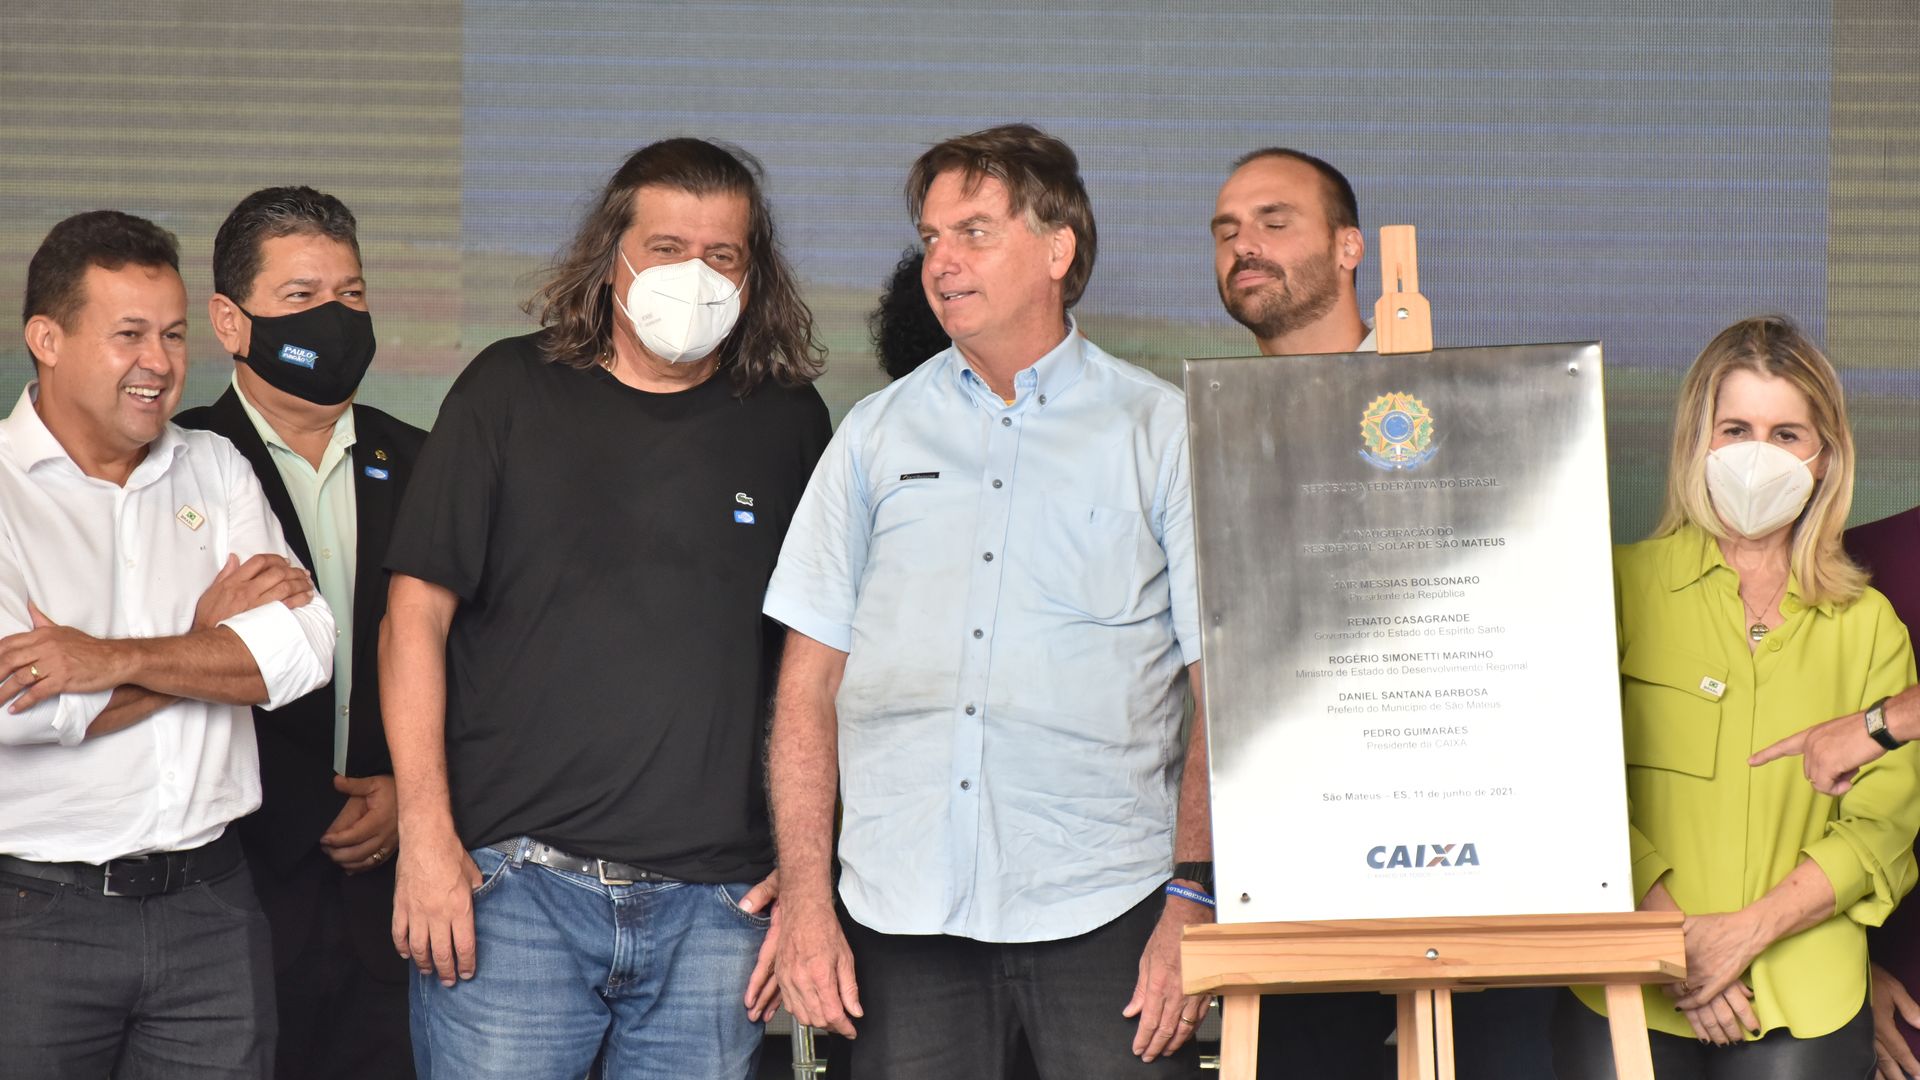  Presidente Jair Bolsonaro em visita à cidade de São Mateus para entregar casas populares no bairro Aroeira